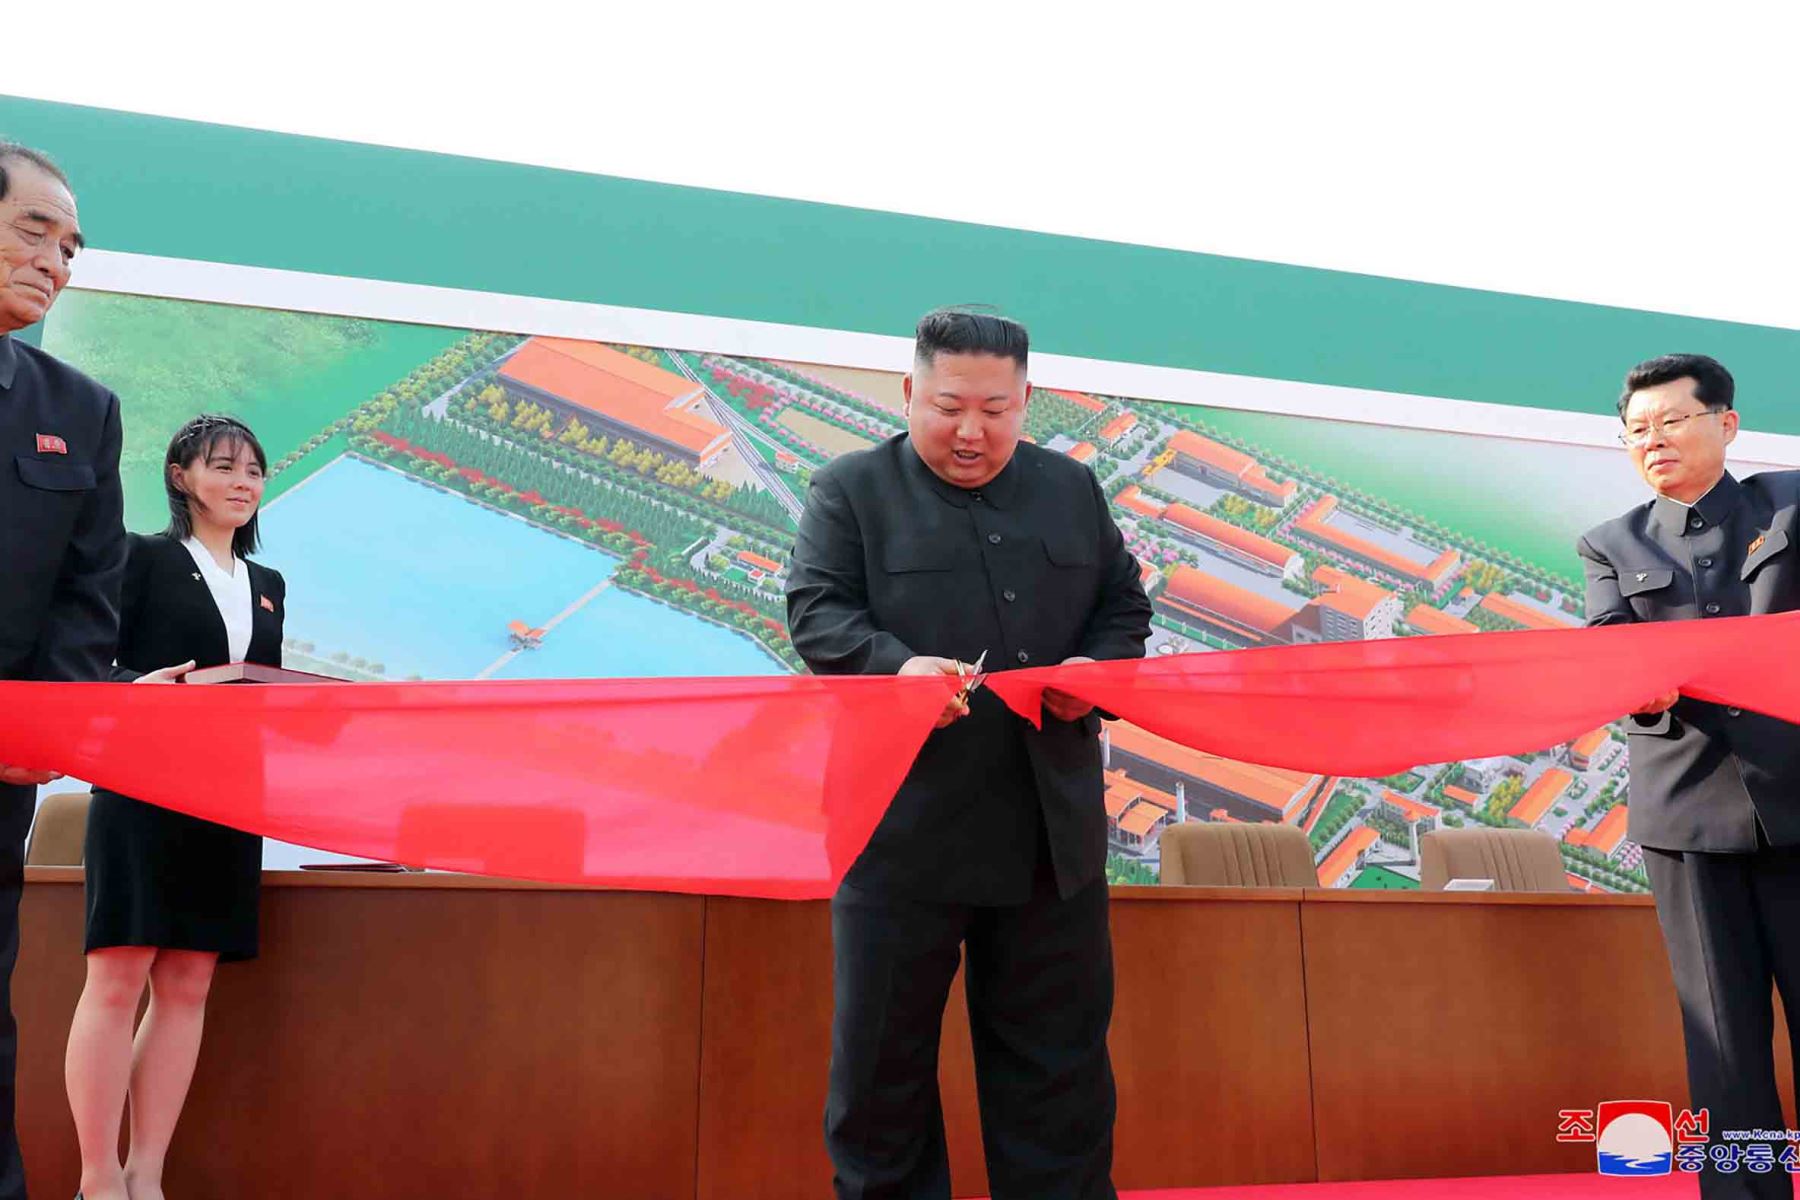 La Agencia de Noticias Central Coreana (KCNA) oficial de rea, el 2 de mayo de 2020, muestra al líder norcoreano Kim Jong Un (2nd R) visitando la fábrica de fertilizantes de fosfato Suchon en la provincia de Pyongan del Sur, Corea del Norte.
STR / KCNA VÍA KNS / AFP